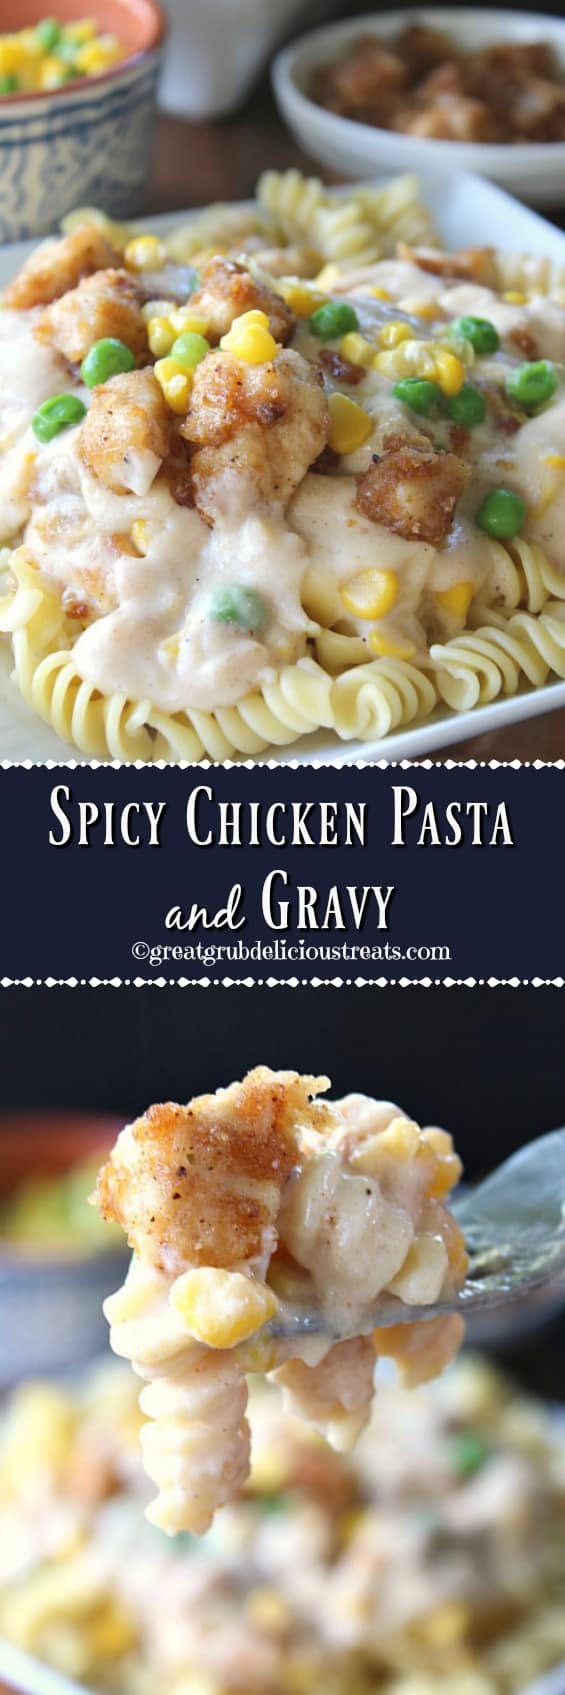 Spicy Chicken Pasta and Gravy